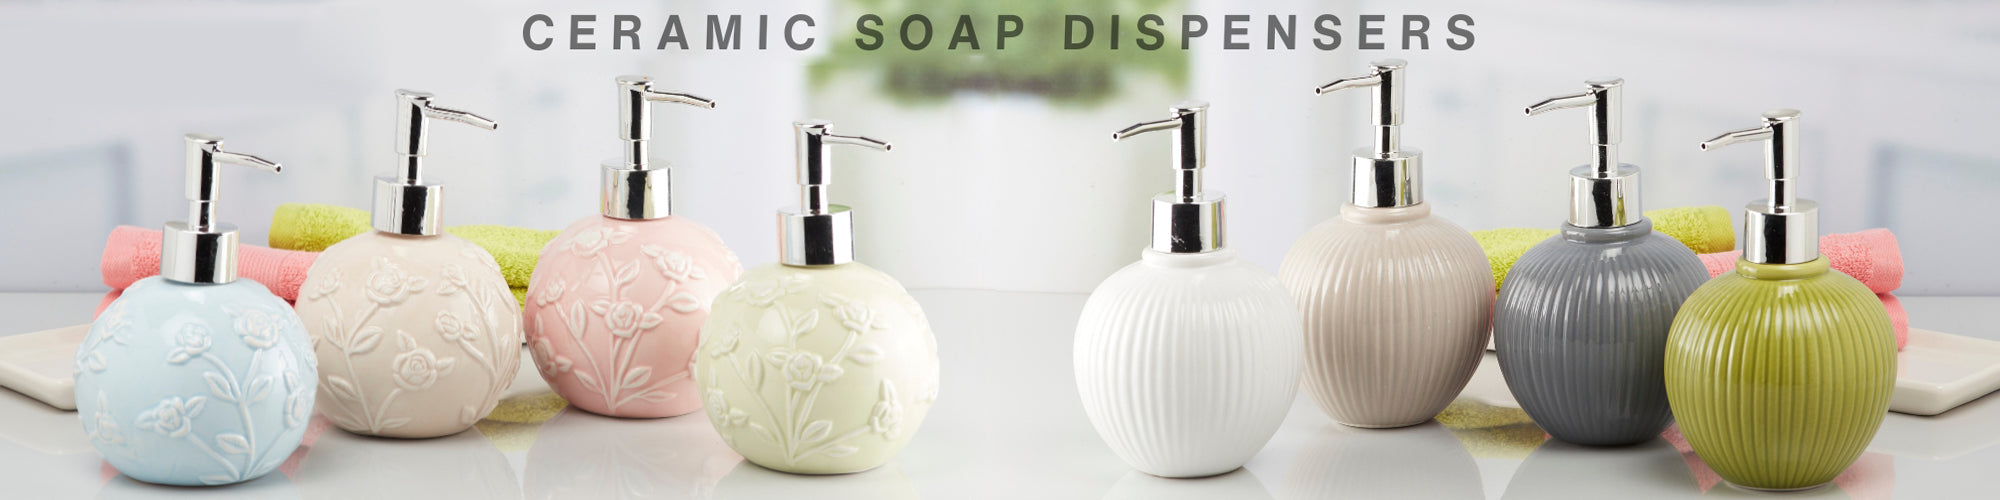 Ceramic Soap Dispensers